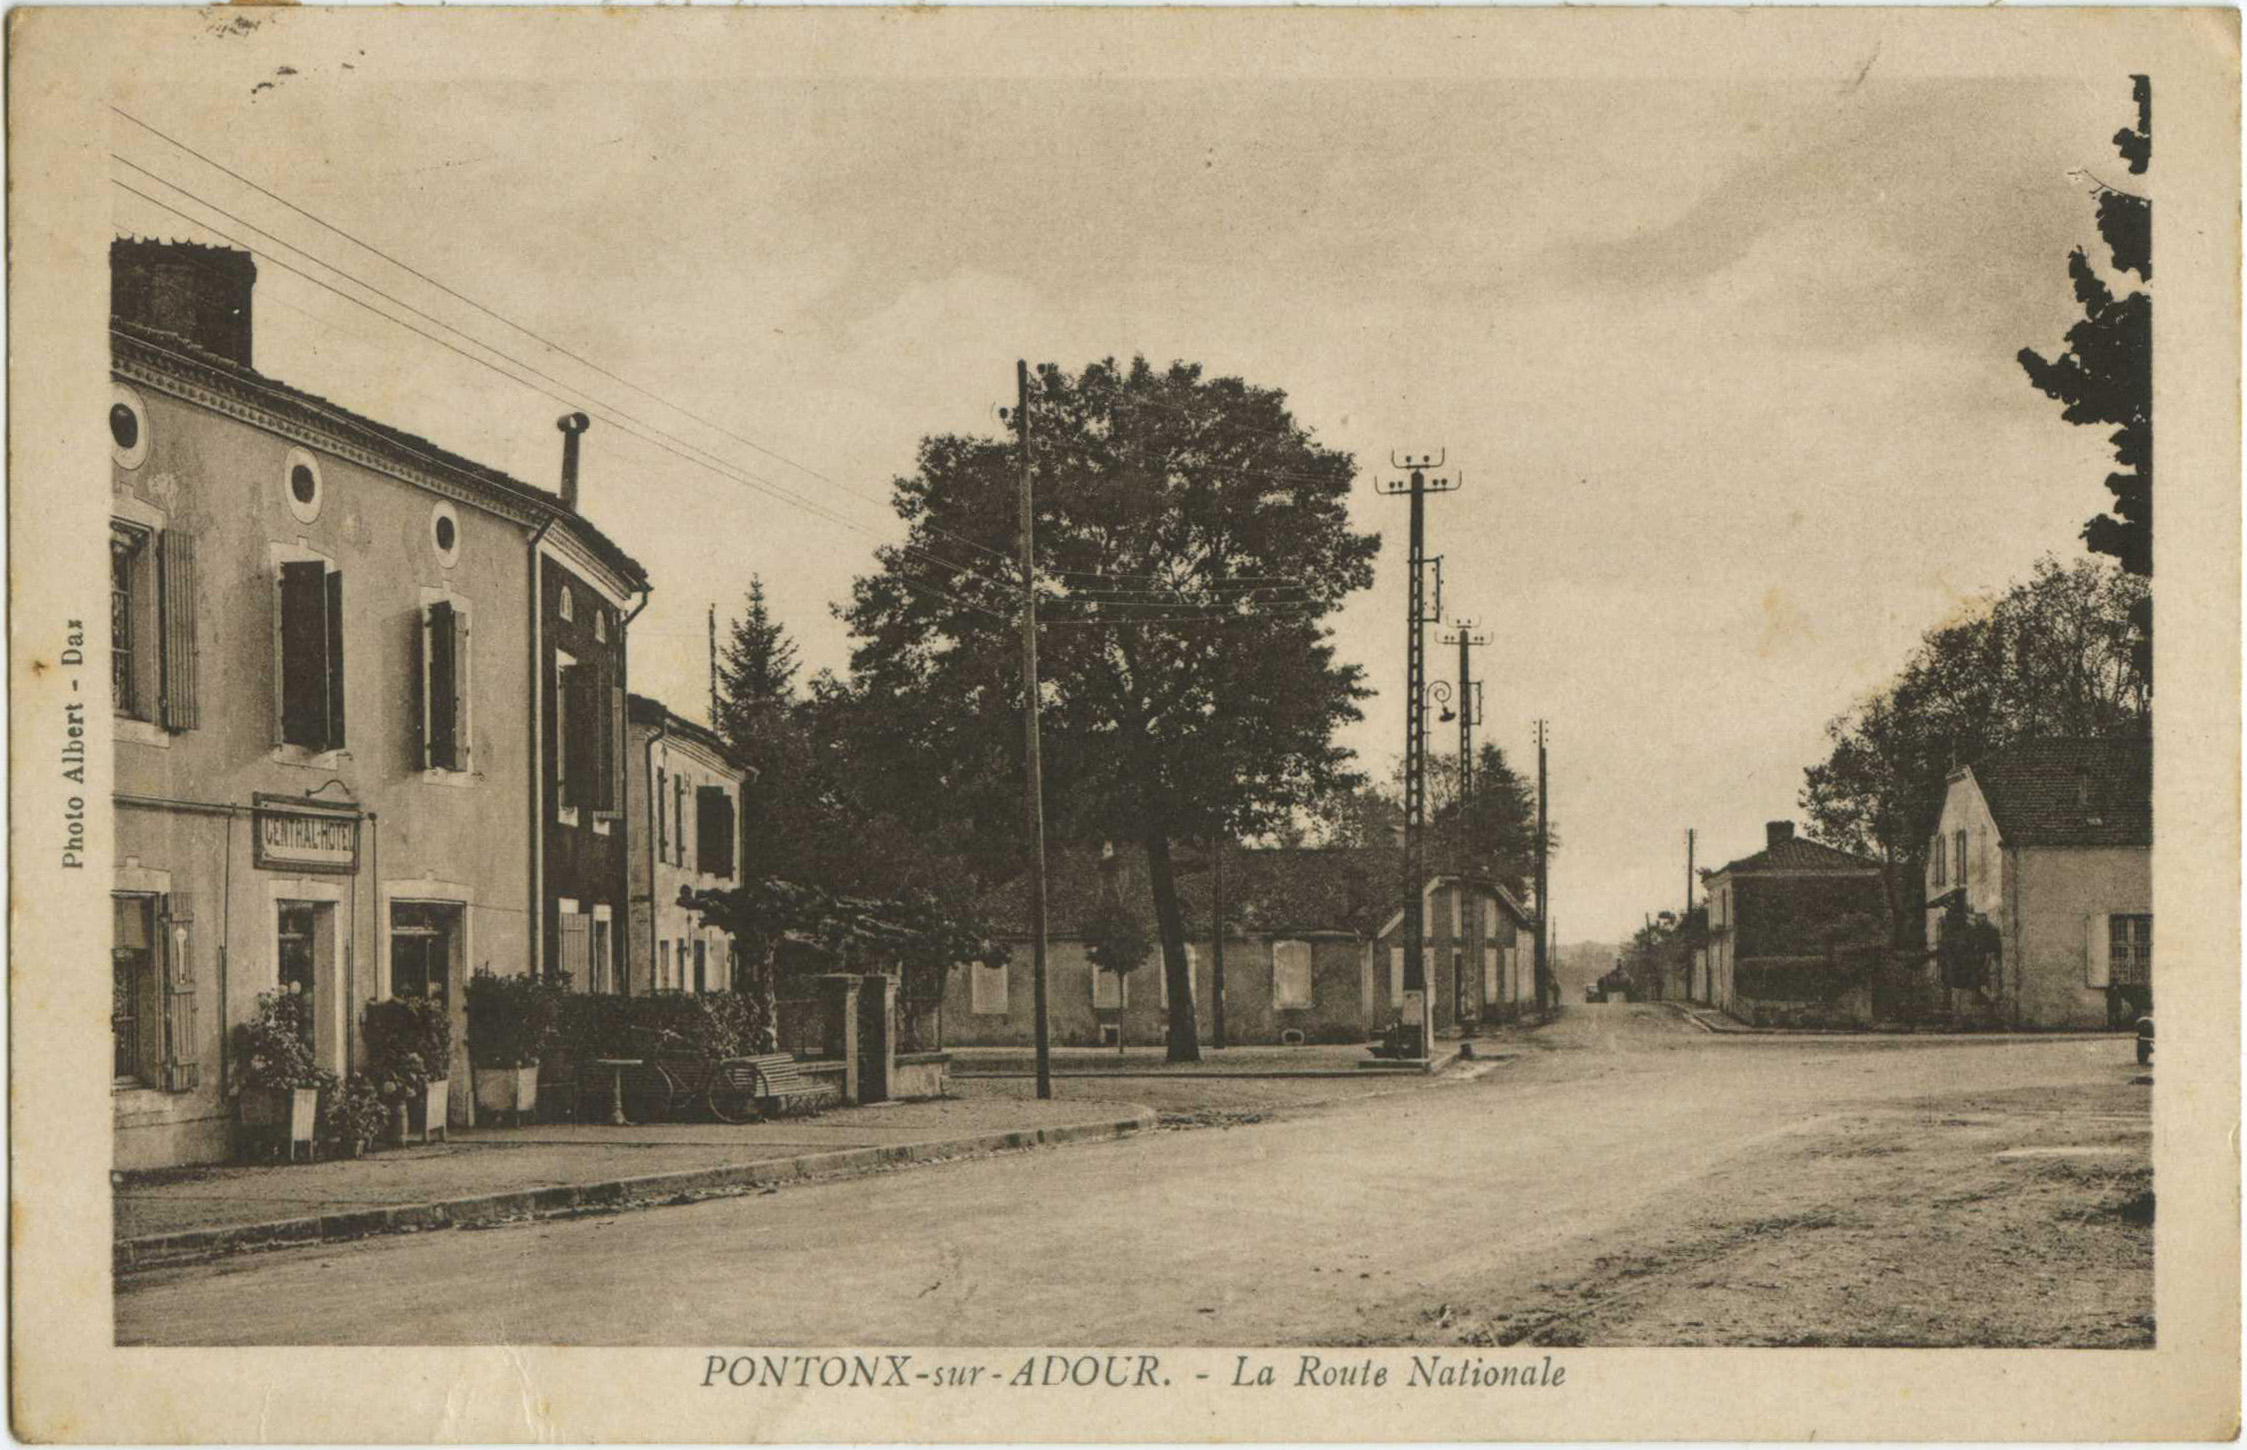 Pontonx-sur-l'Adour - La Route Nationale